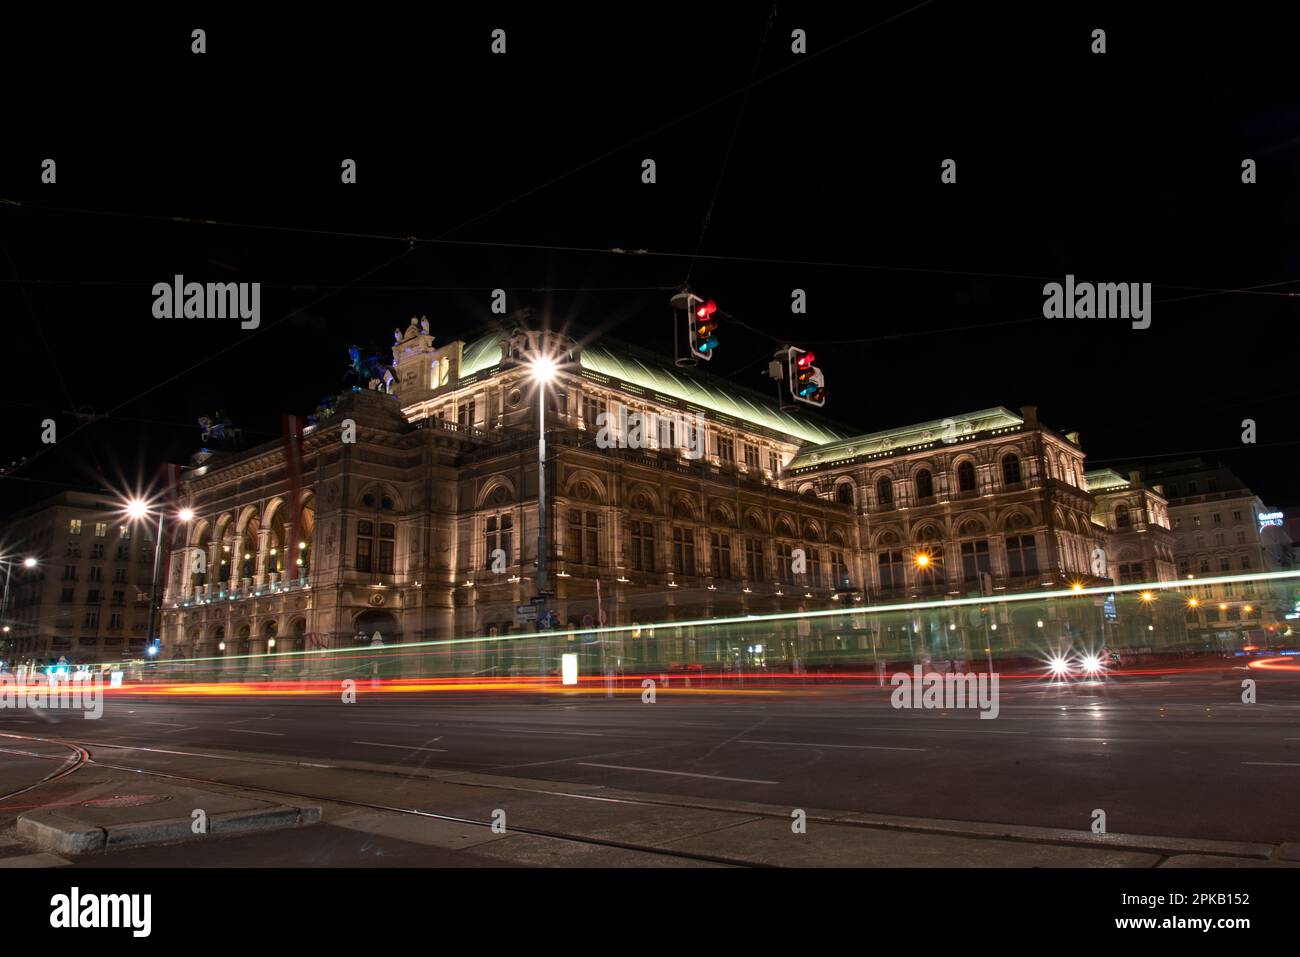 Le célèbre Opéra de Vienne de nuit, Autriche Banque D'Images